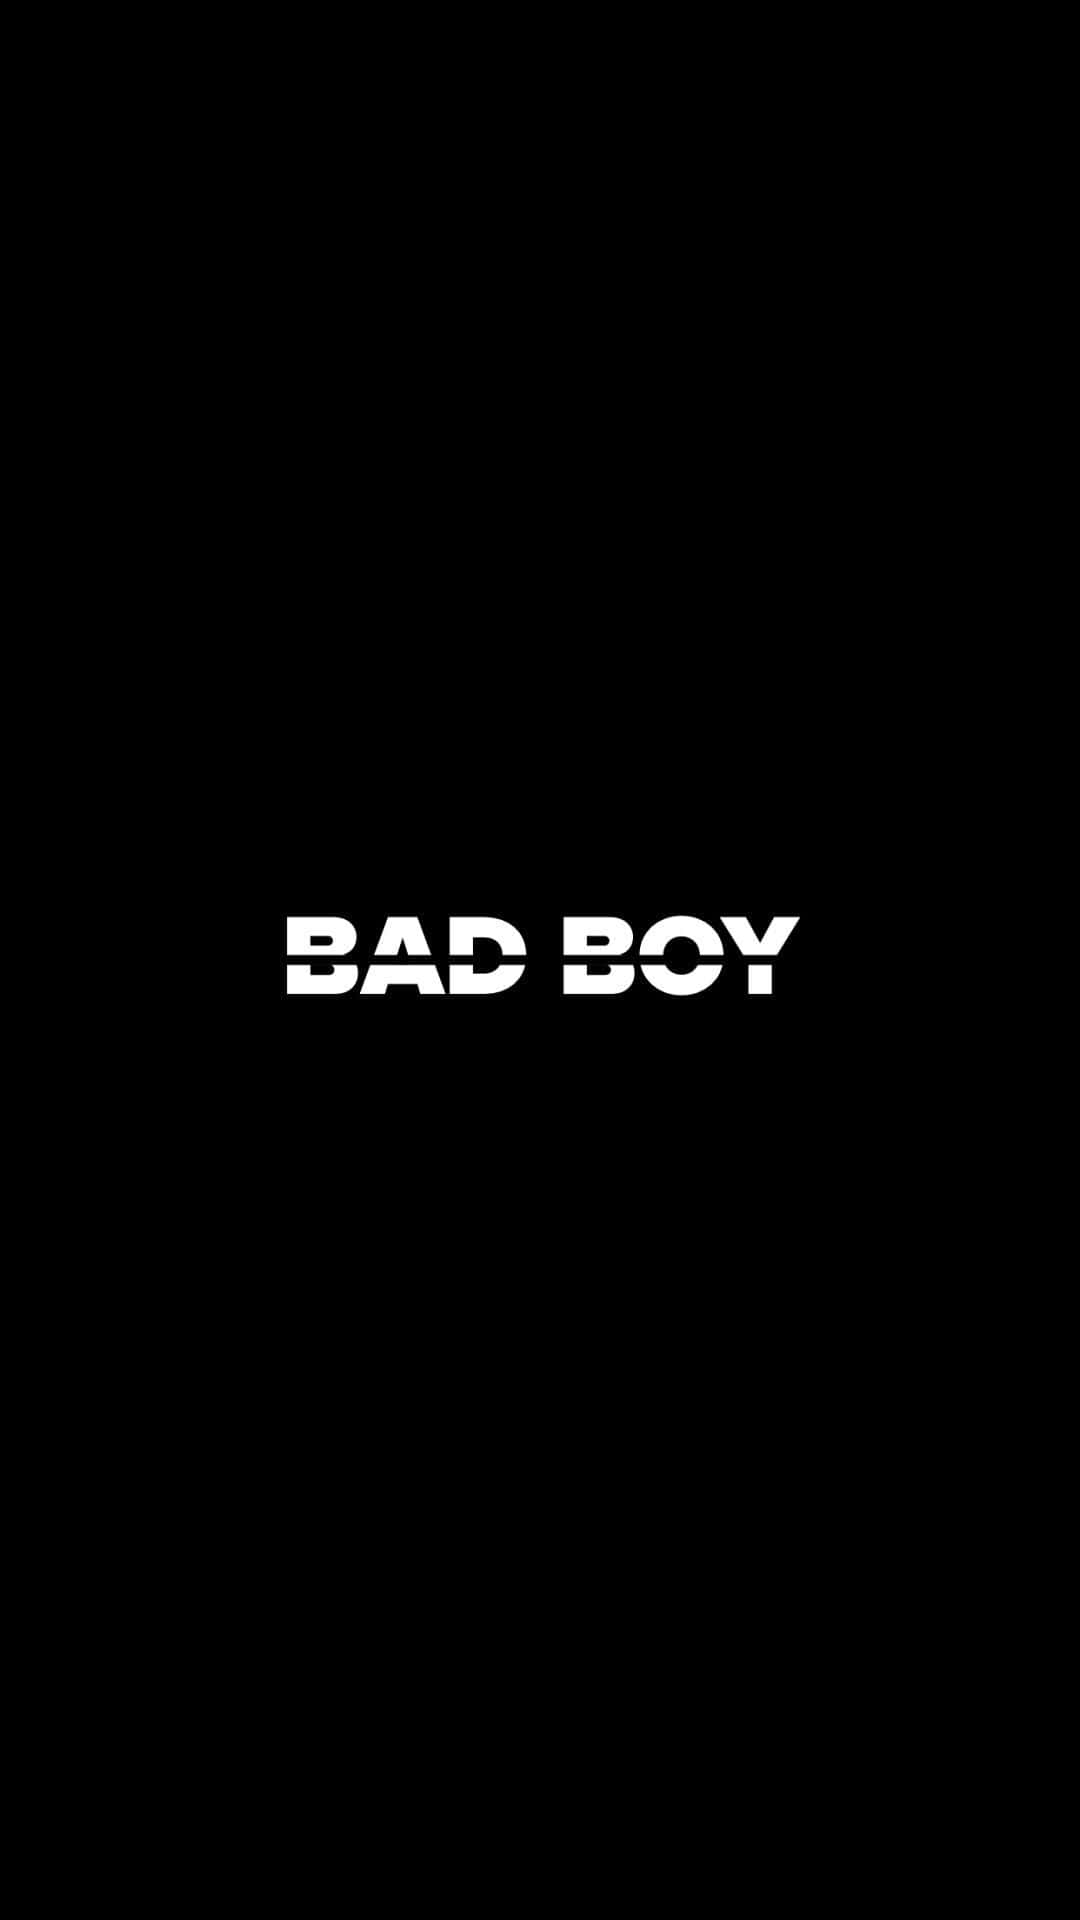 Bad Boy Logo On A Black Background